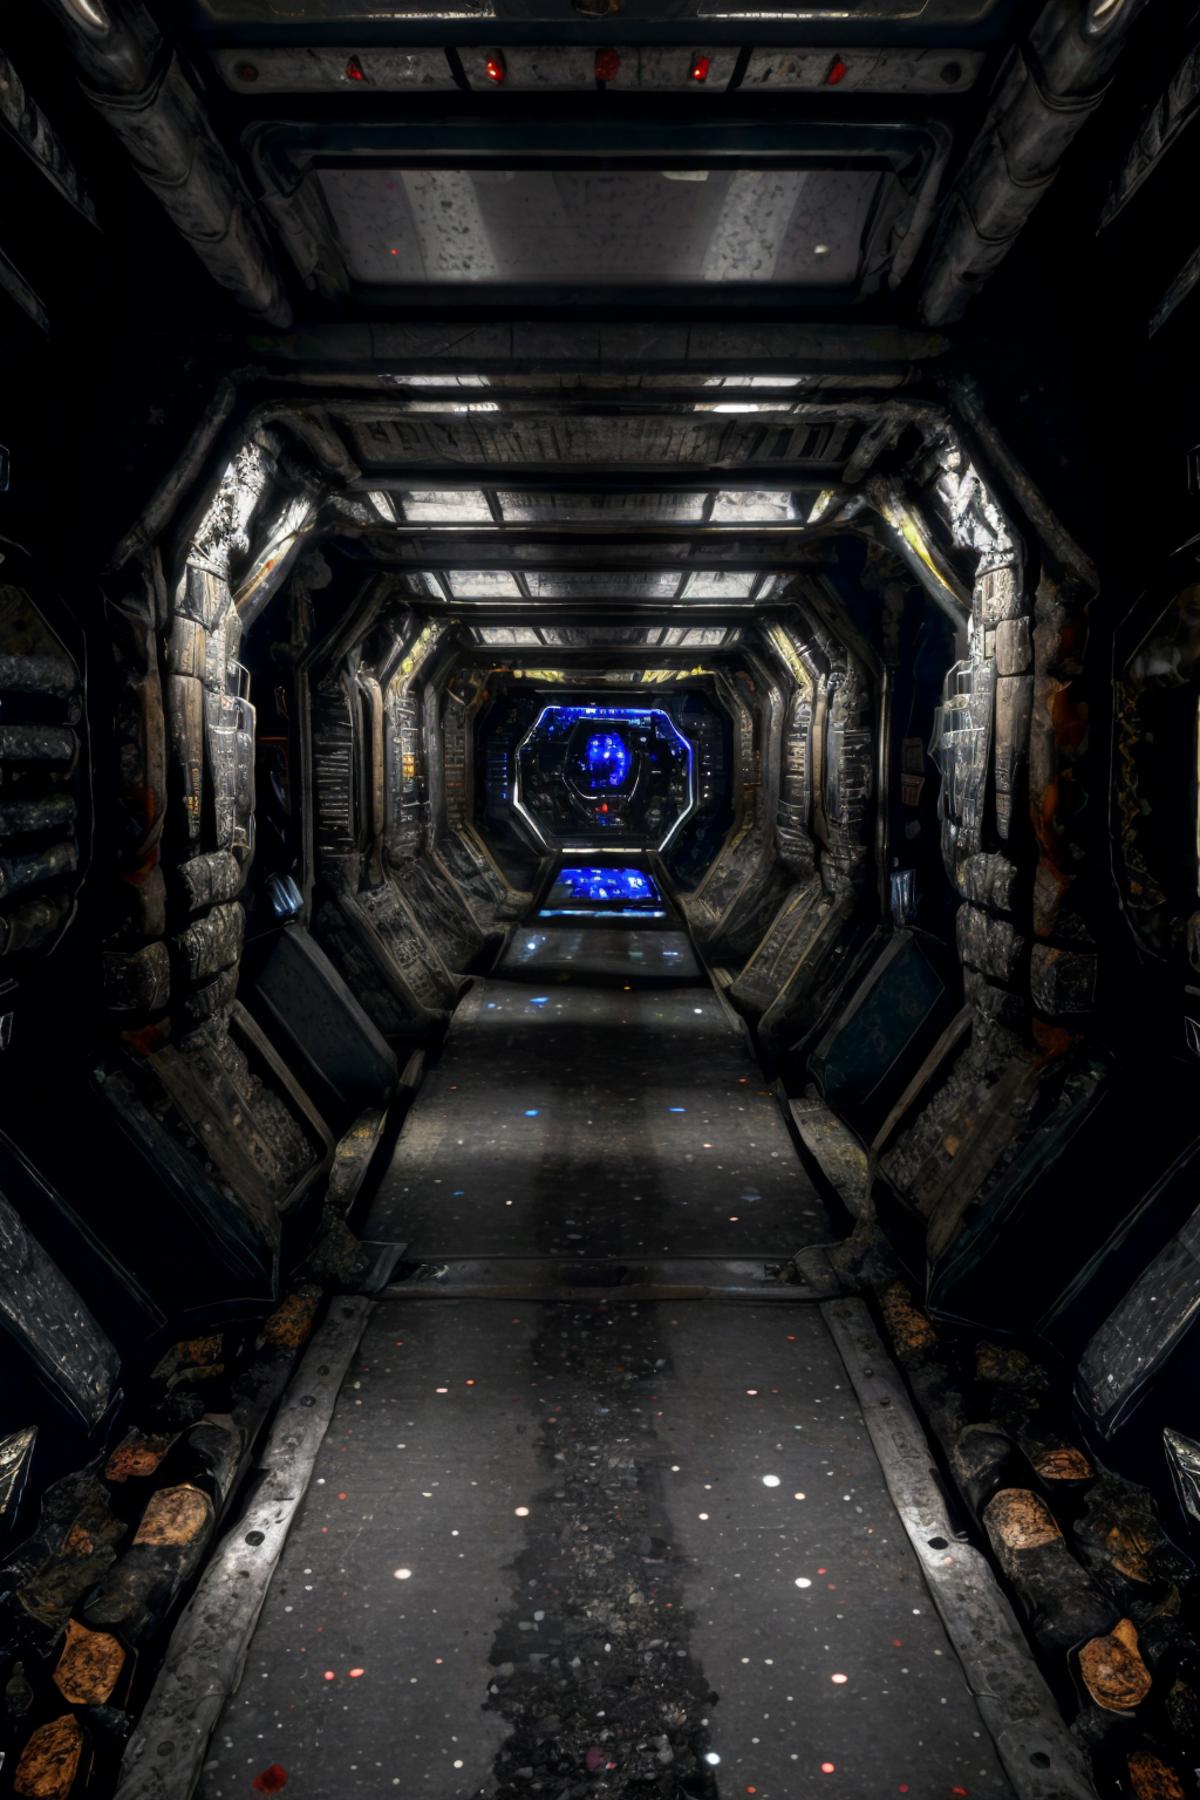 Alien Corridors image by thorenx1706632